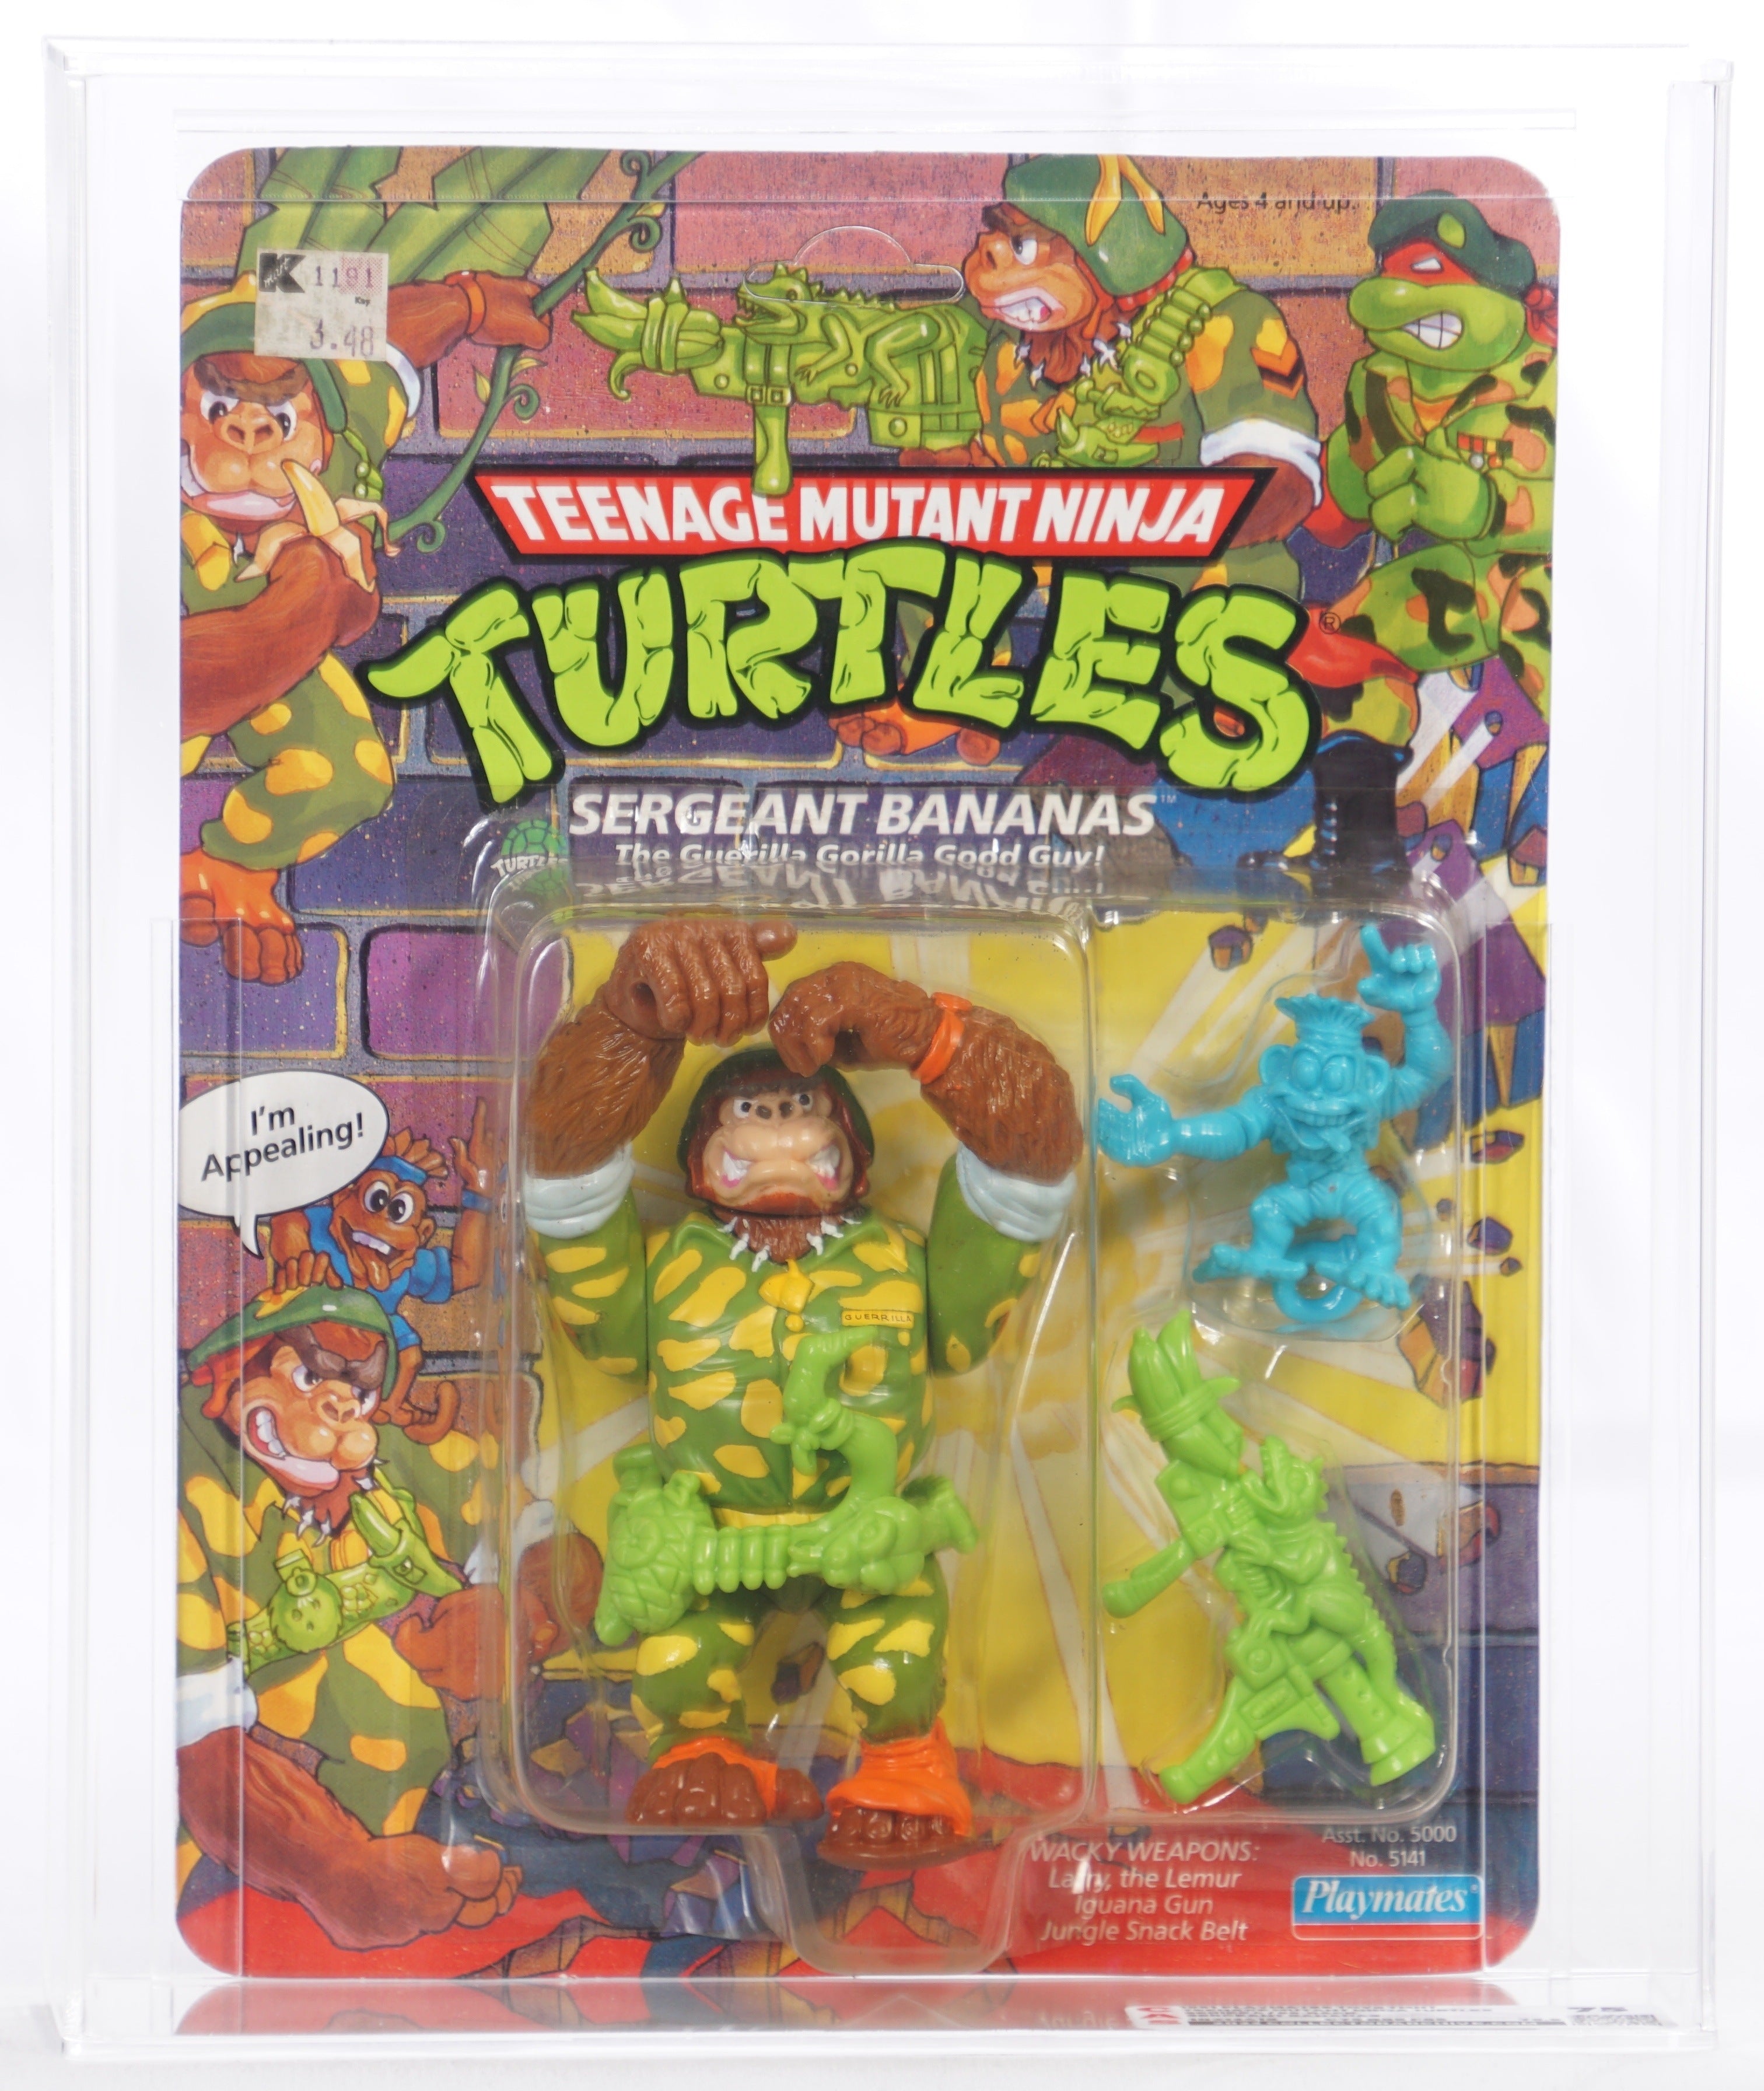 1991 Playmates Teenage Mutant Ninja Turtles Carded Action Figure - Ser